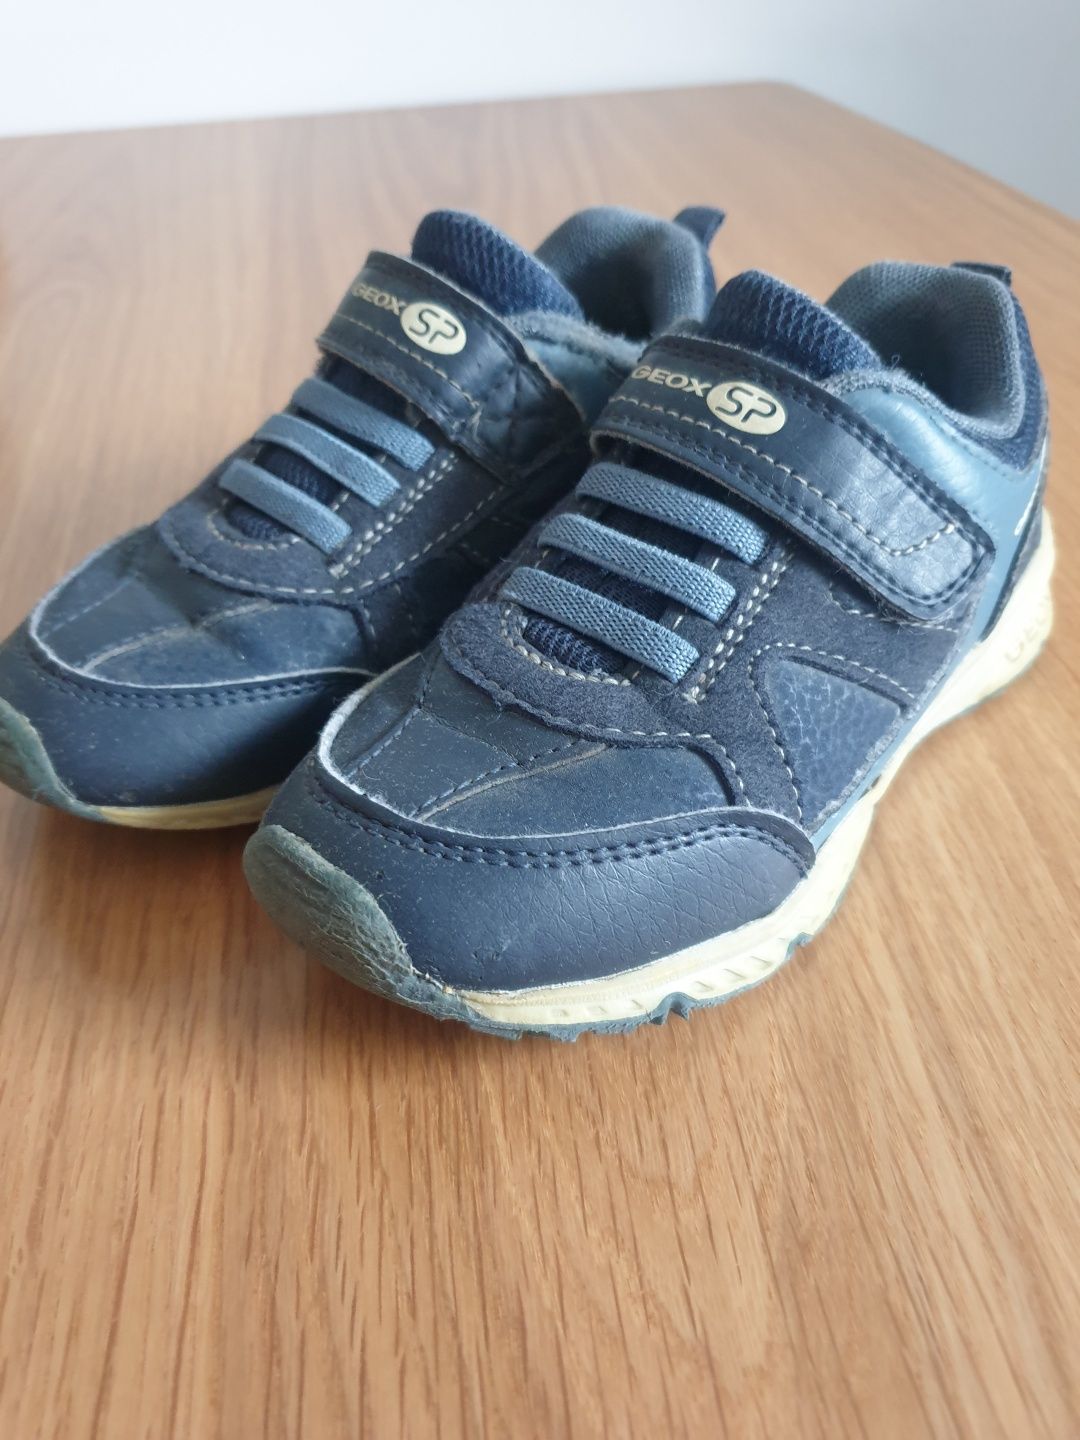 GRATIS KALOSZE Adidasy buty buciki geox dla chłopca 26